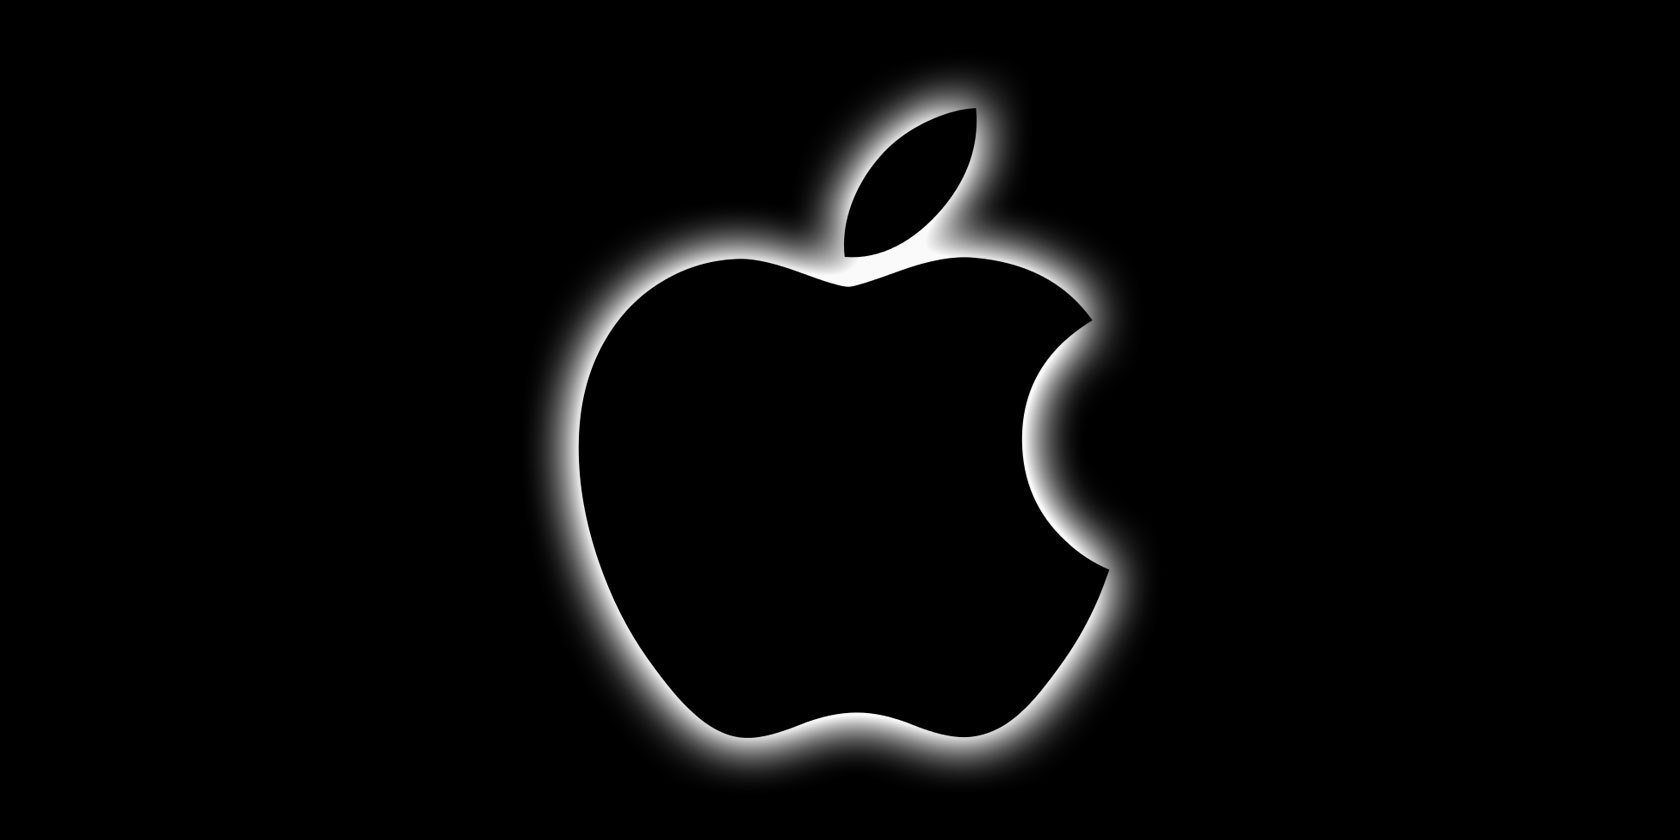 Bmp picture. Apple на черном фоне. Логотип айфона. Логотип айфона яблоко. Логотип Apple на черном фоне.